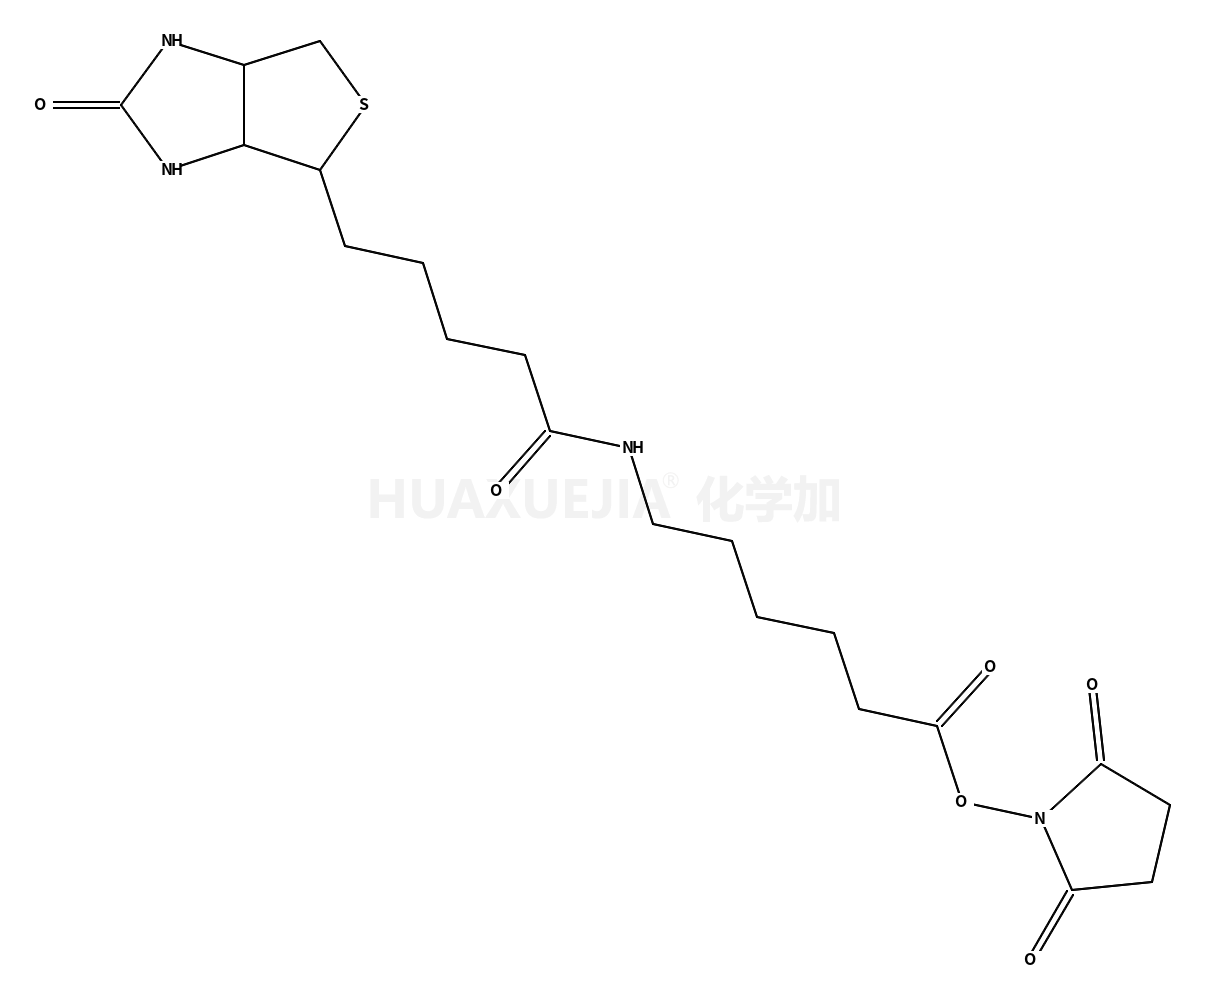 生物素化-epsilon-氨基己酸-N-羟基丁二酰亚胺活化酯